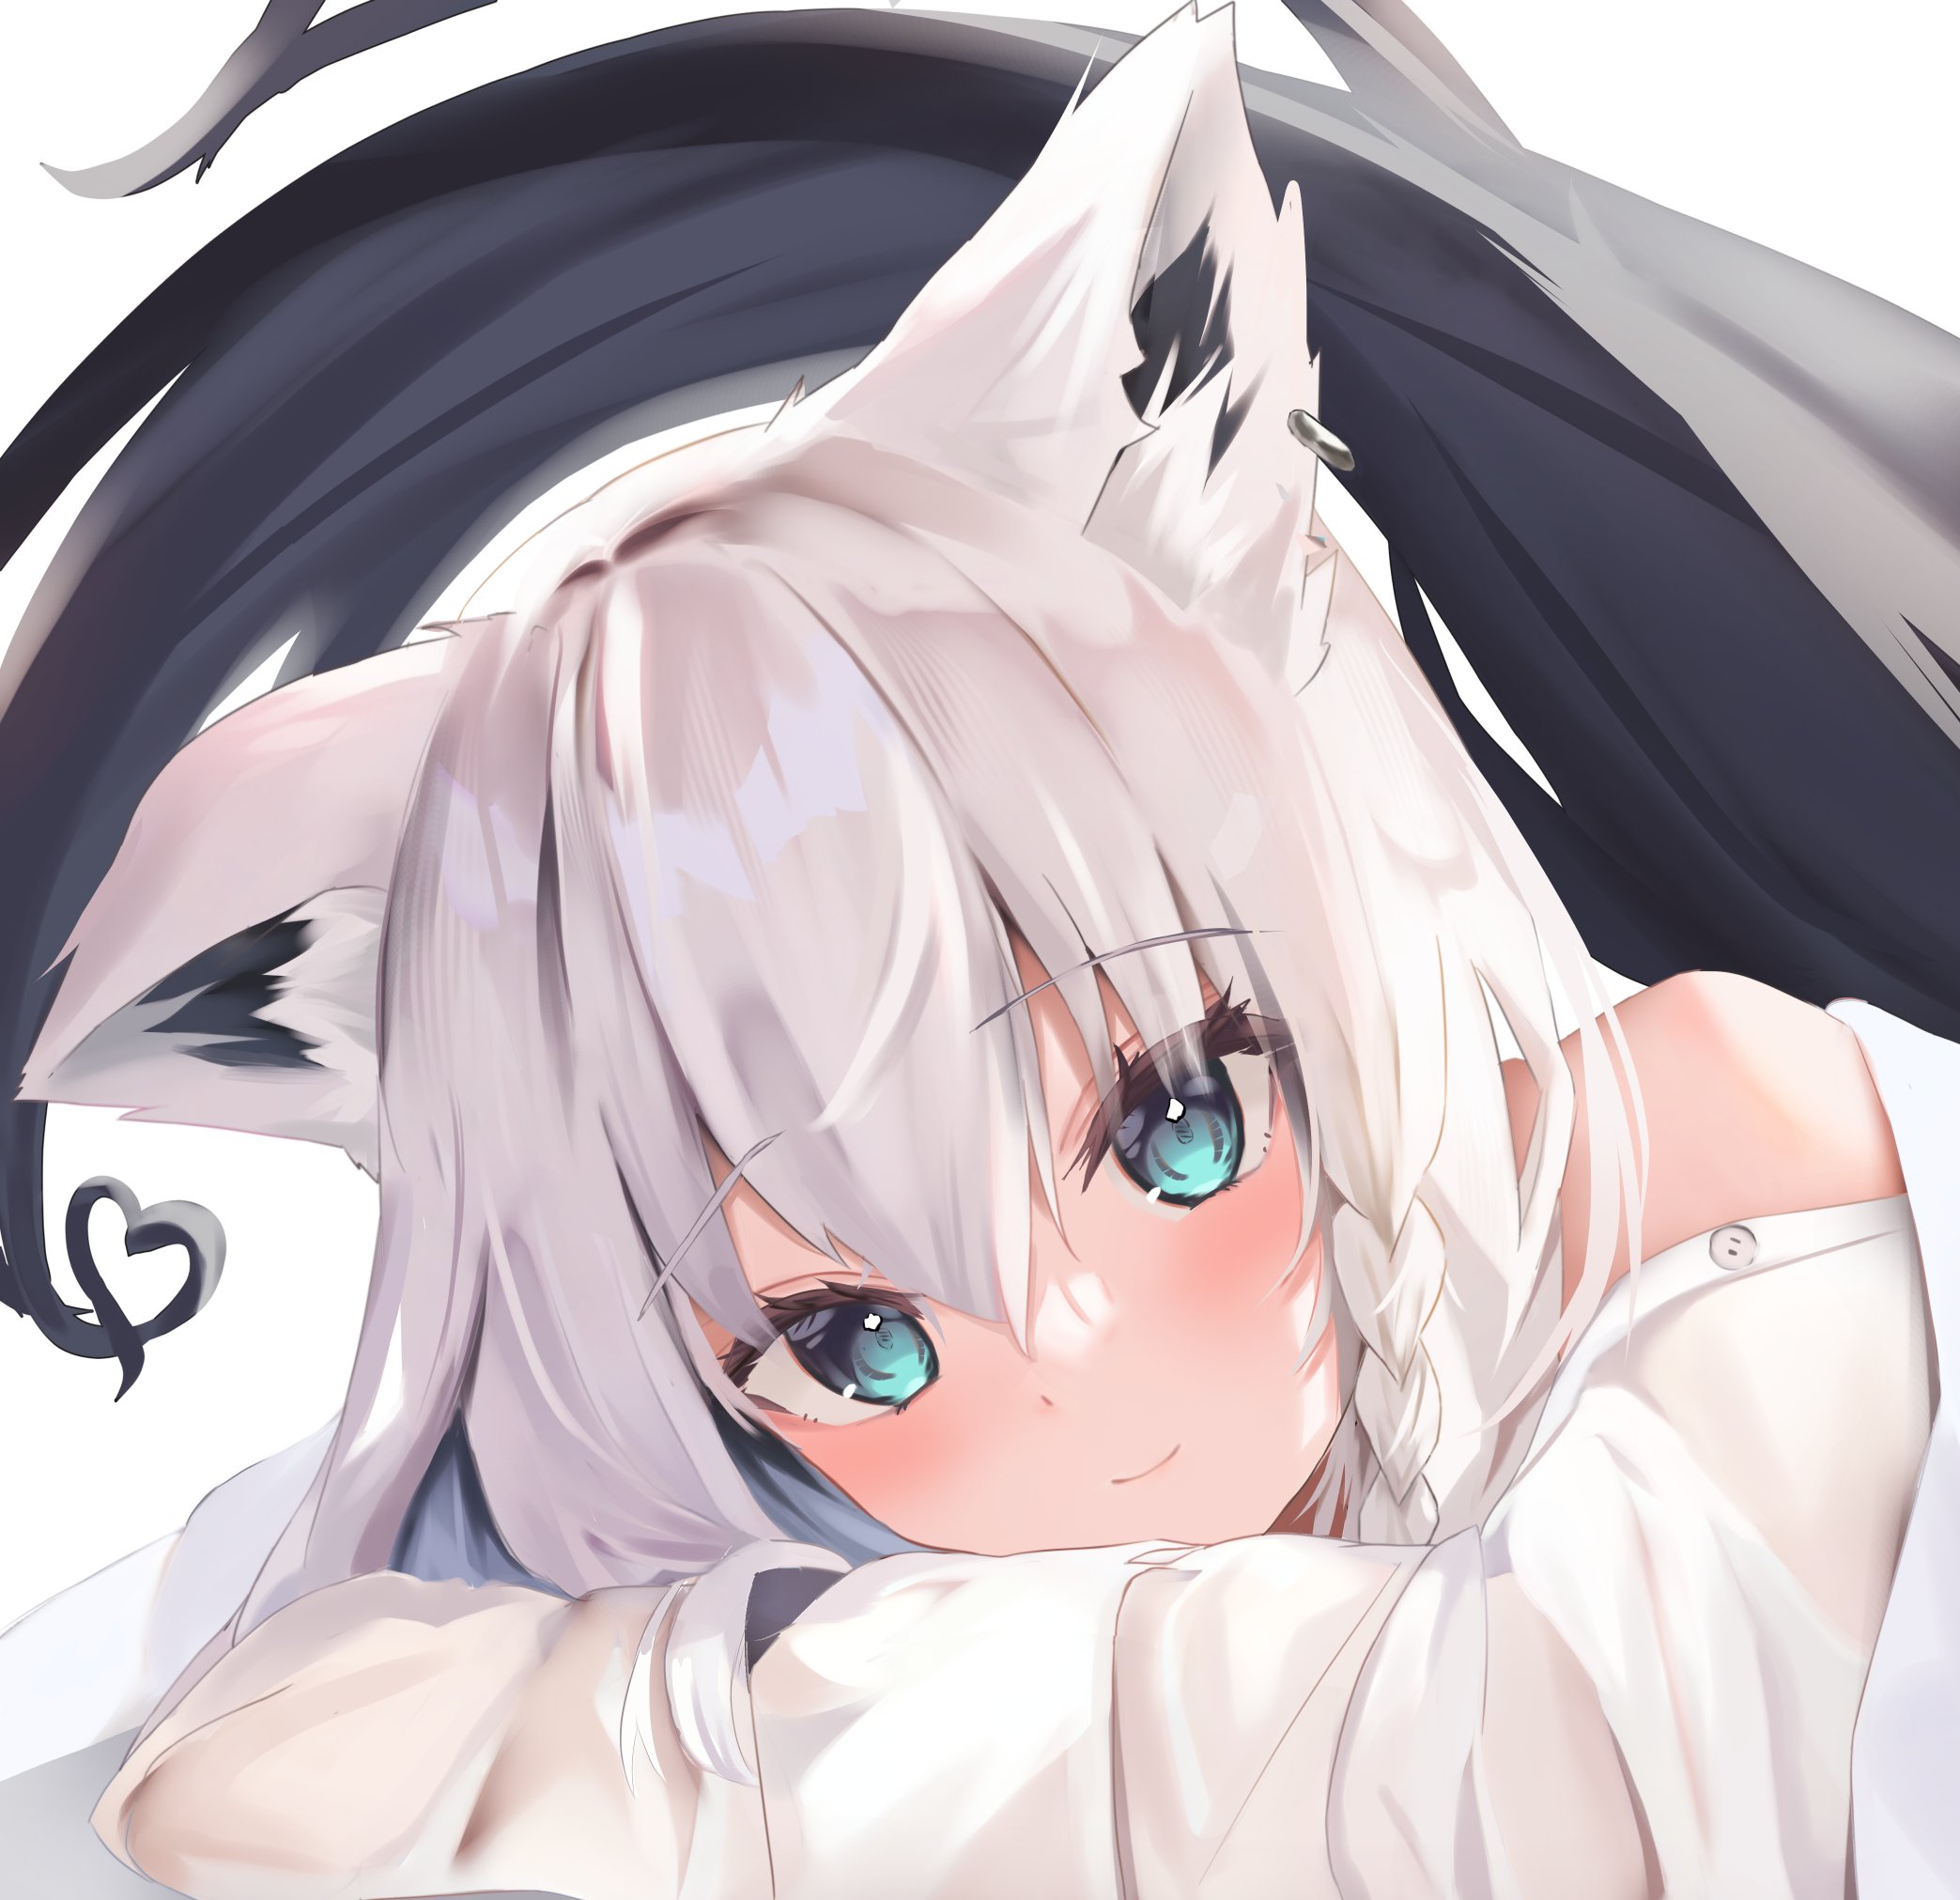 art :: anime :: fox girl :: fox ears - JoyReactor